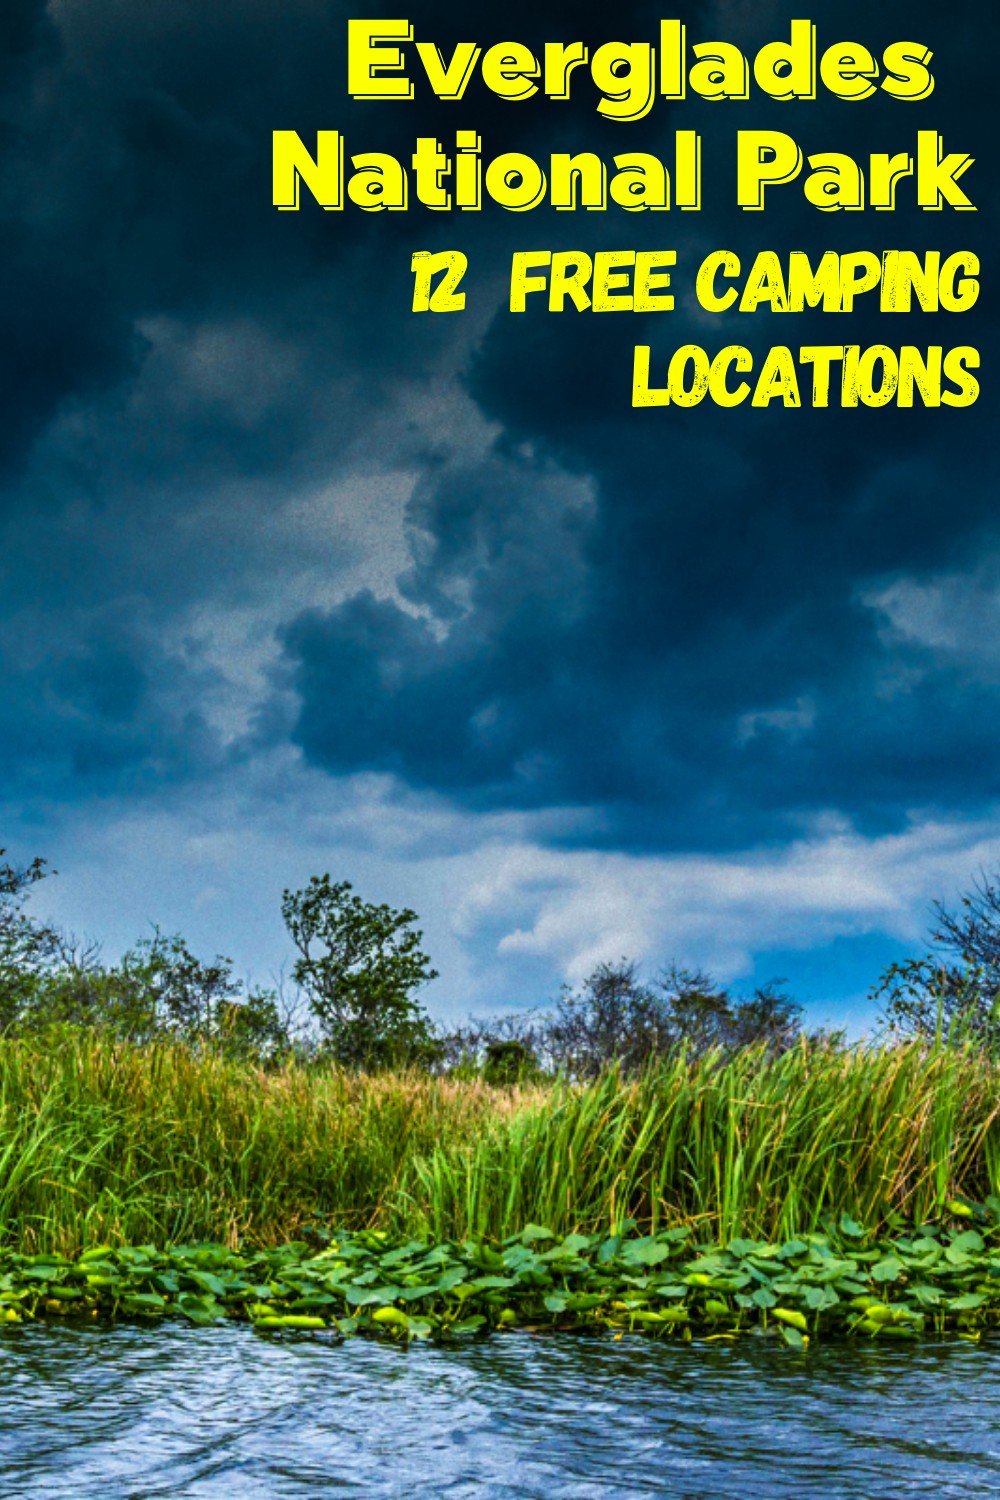  Free Campsites for Everglades National Park 